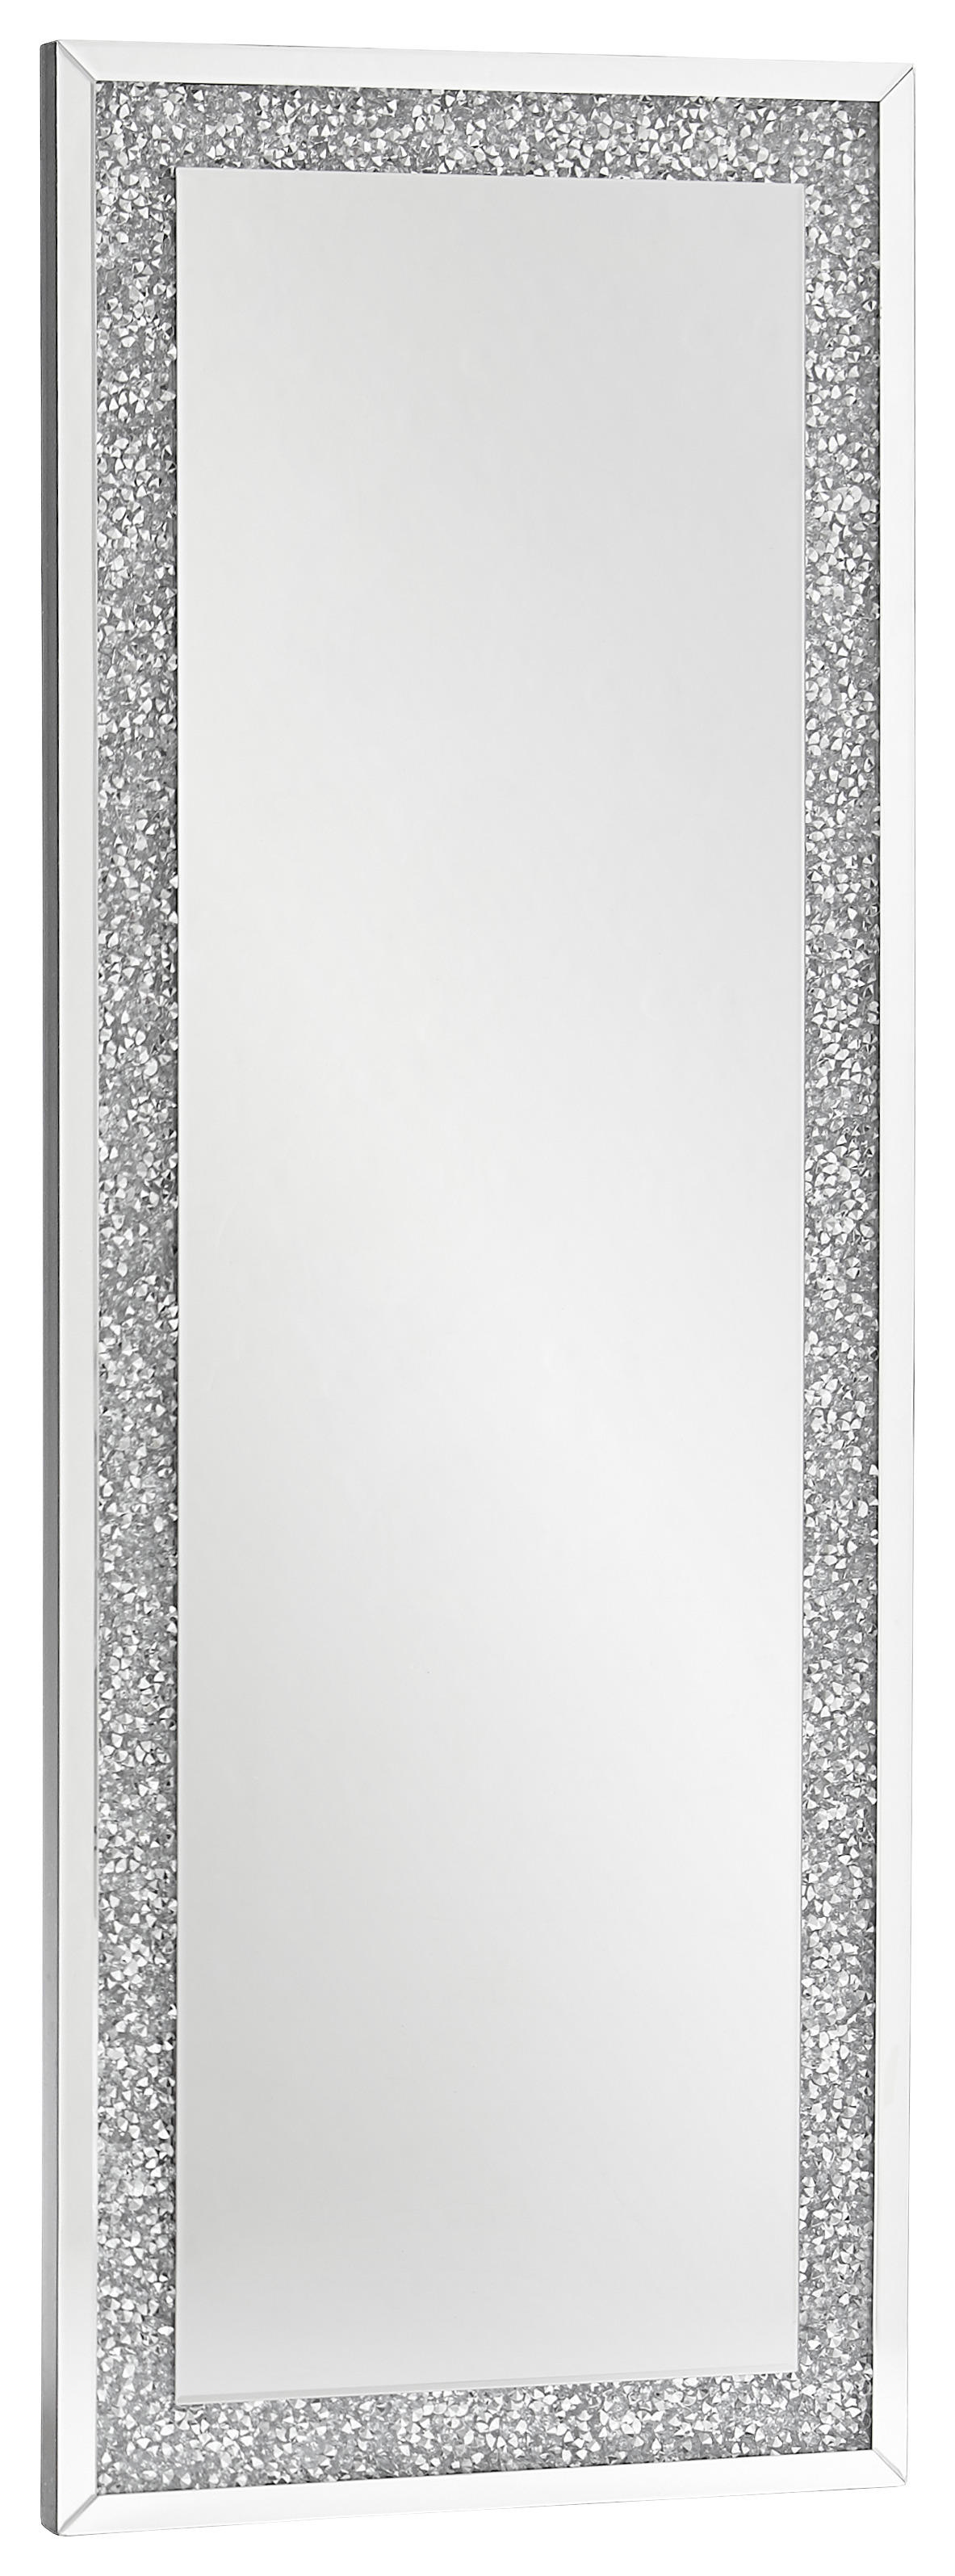 VÄGGSPEGEL 60/160/4 cm    - silver, Lifestyle, glas/träbaserade material (60/160/4cm) - Xora